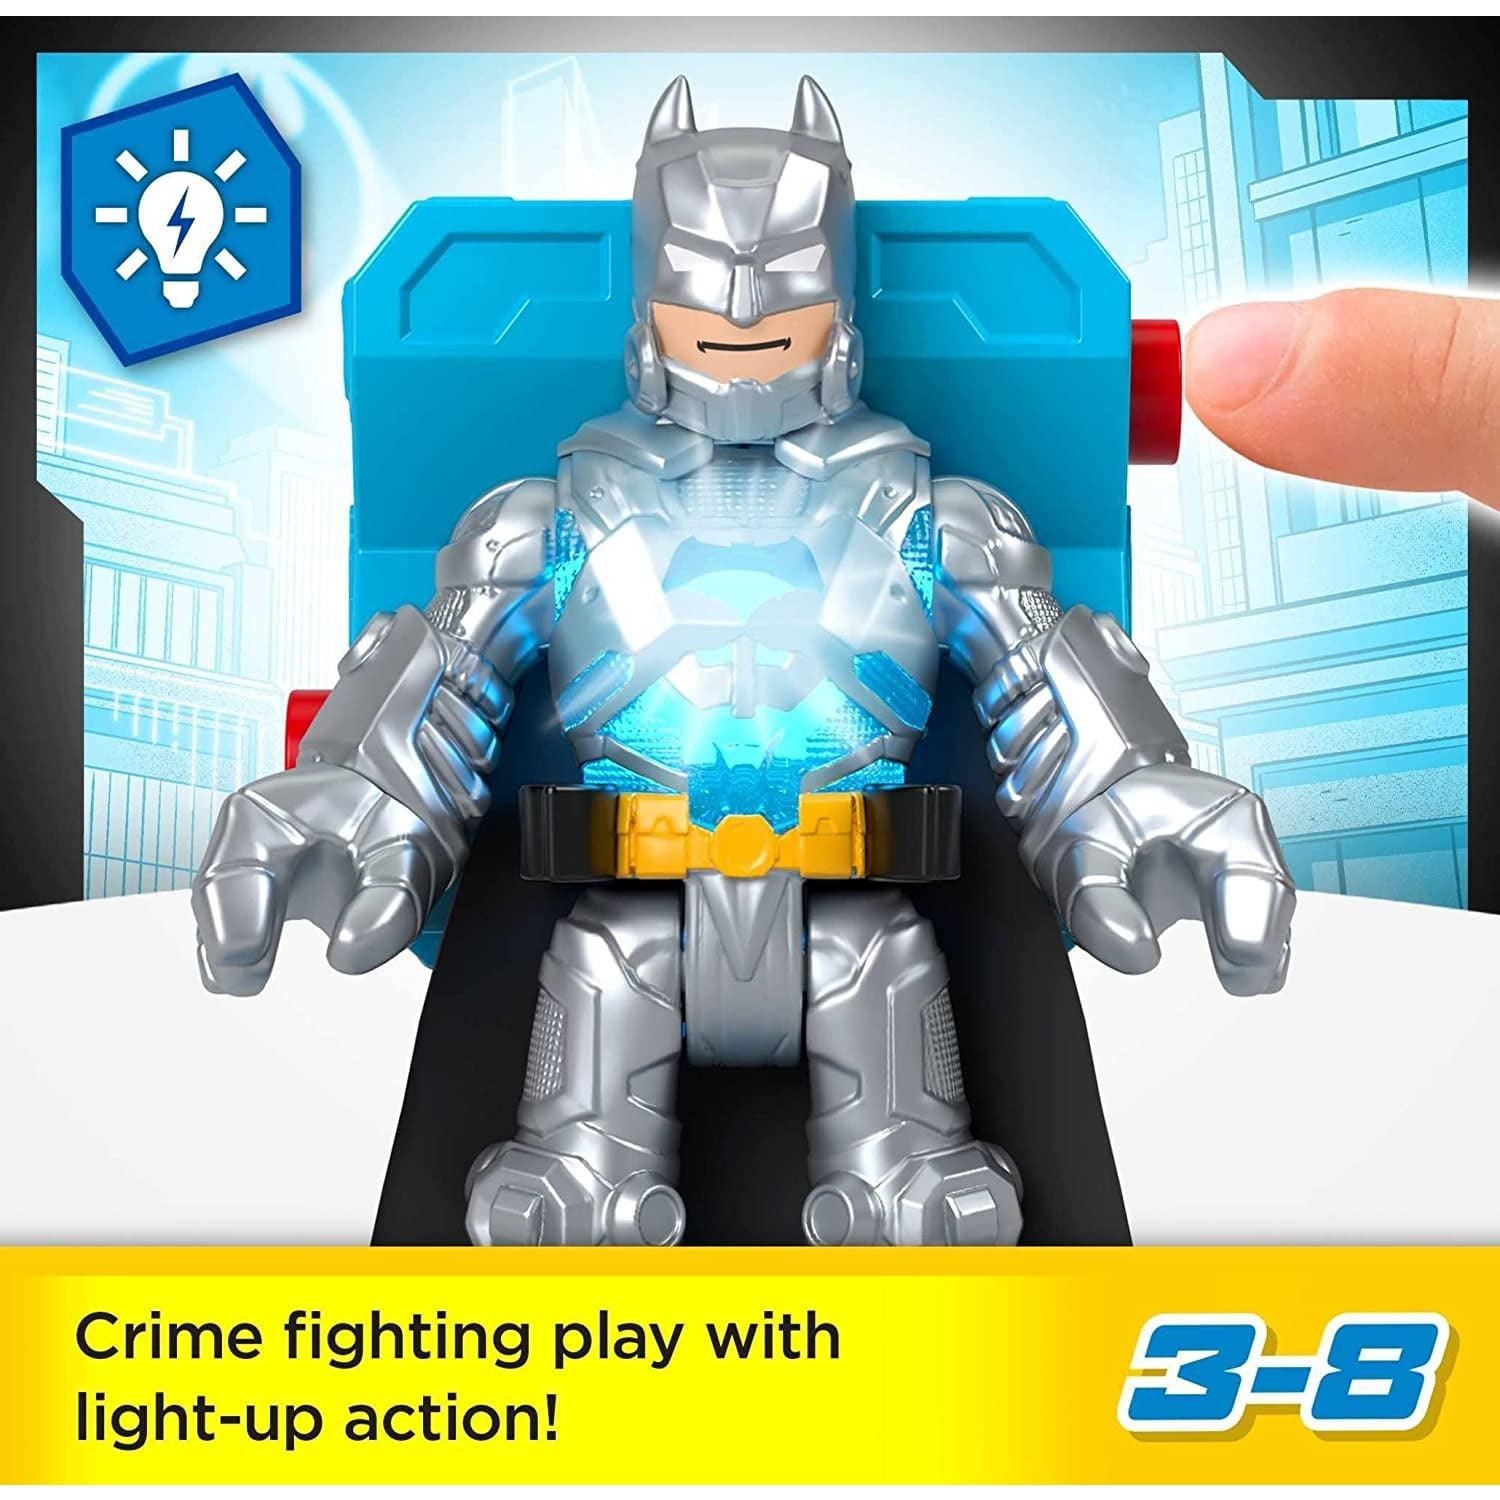 Imaginext DC Super Friends Batman Toys, Batman Battle Multipack, 9-Piece Figure Set with Light-Up for Pretend Play